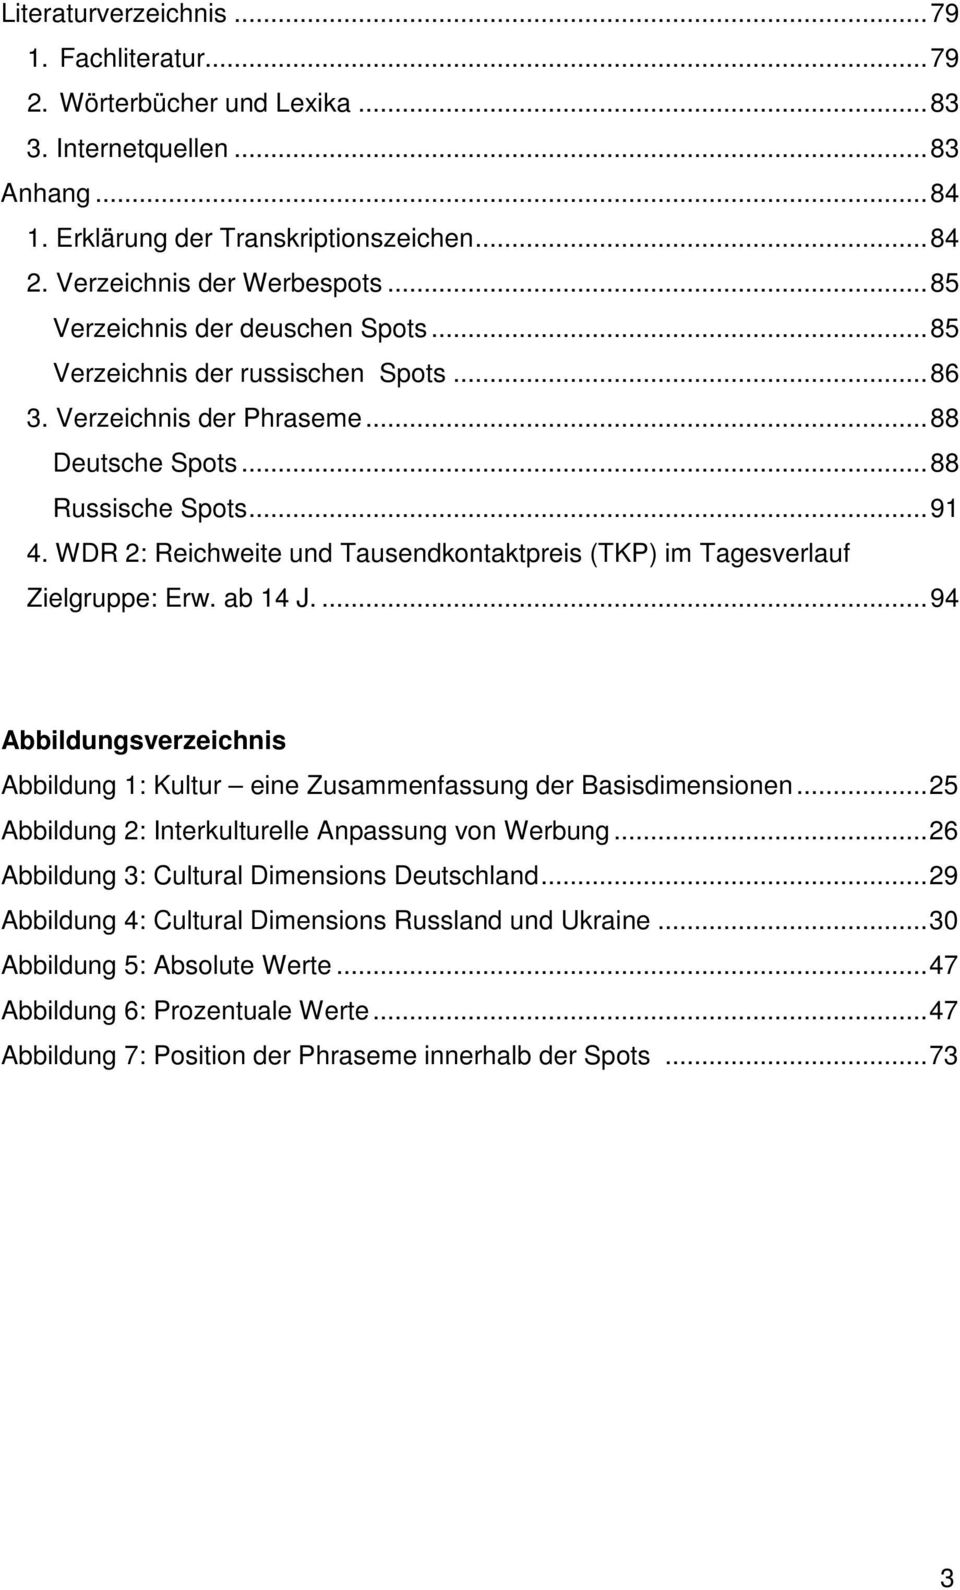 WDR 2: Reichweite und Tausendkontaktpreis (TKP) im Tagesverlauf Zielgruppe: Erw. ab 14 J....94 Abbildungsverzeichnis Abbildung 1: Kultur eine Zusammenfassung der Basisdimensionen.